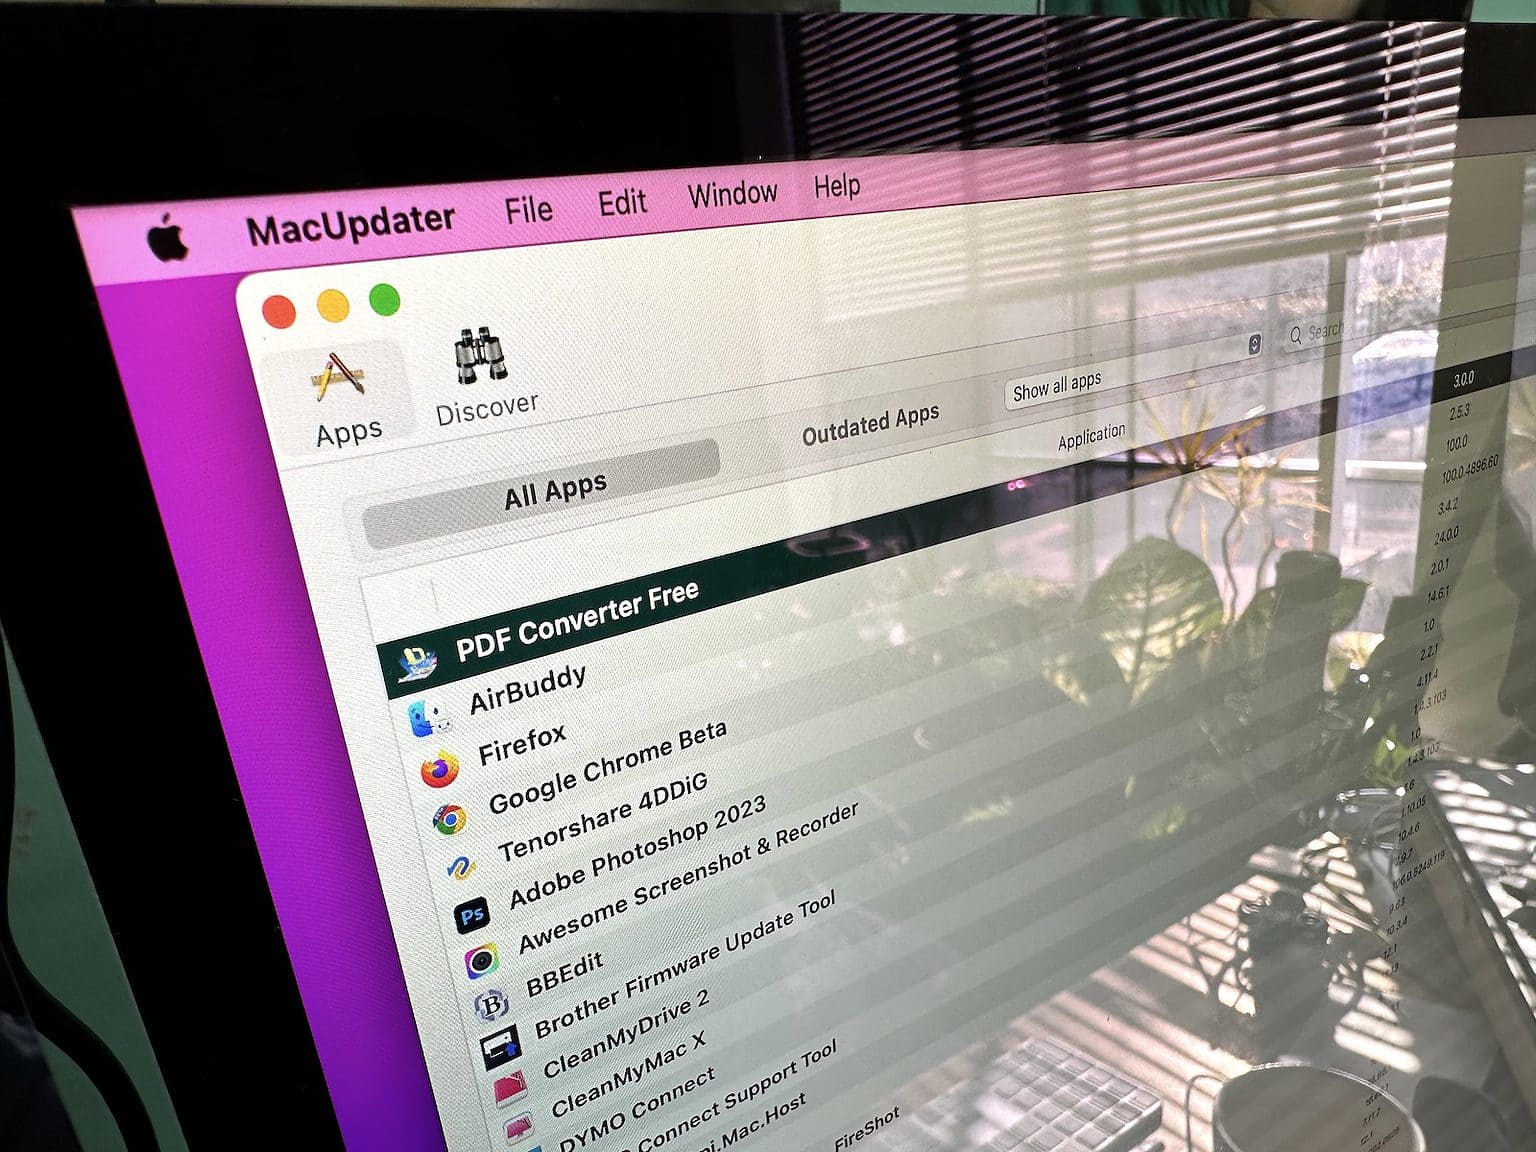 MacUpdater app on a computer screen